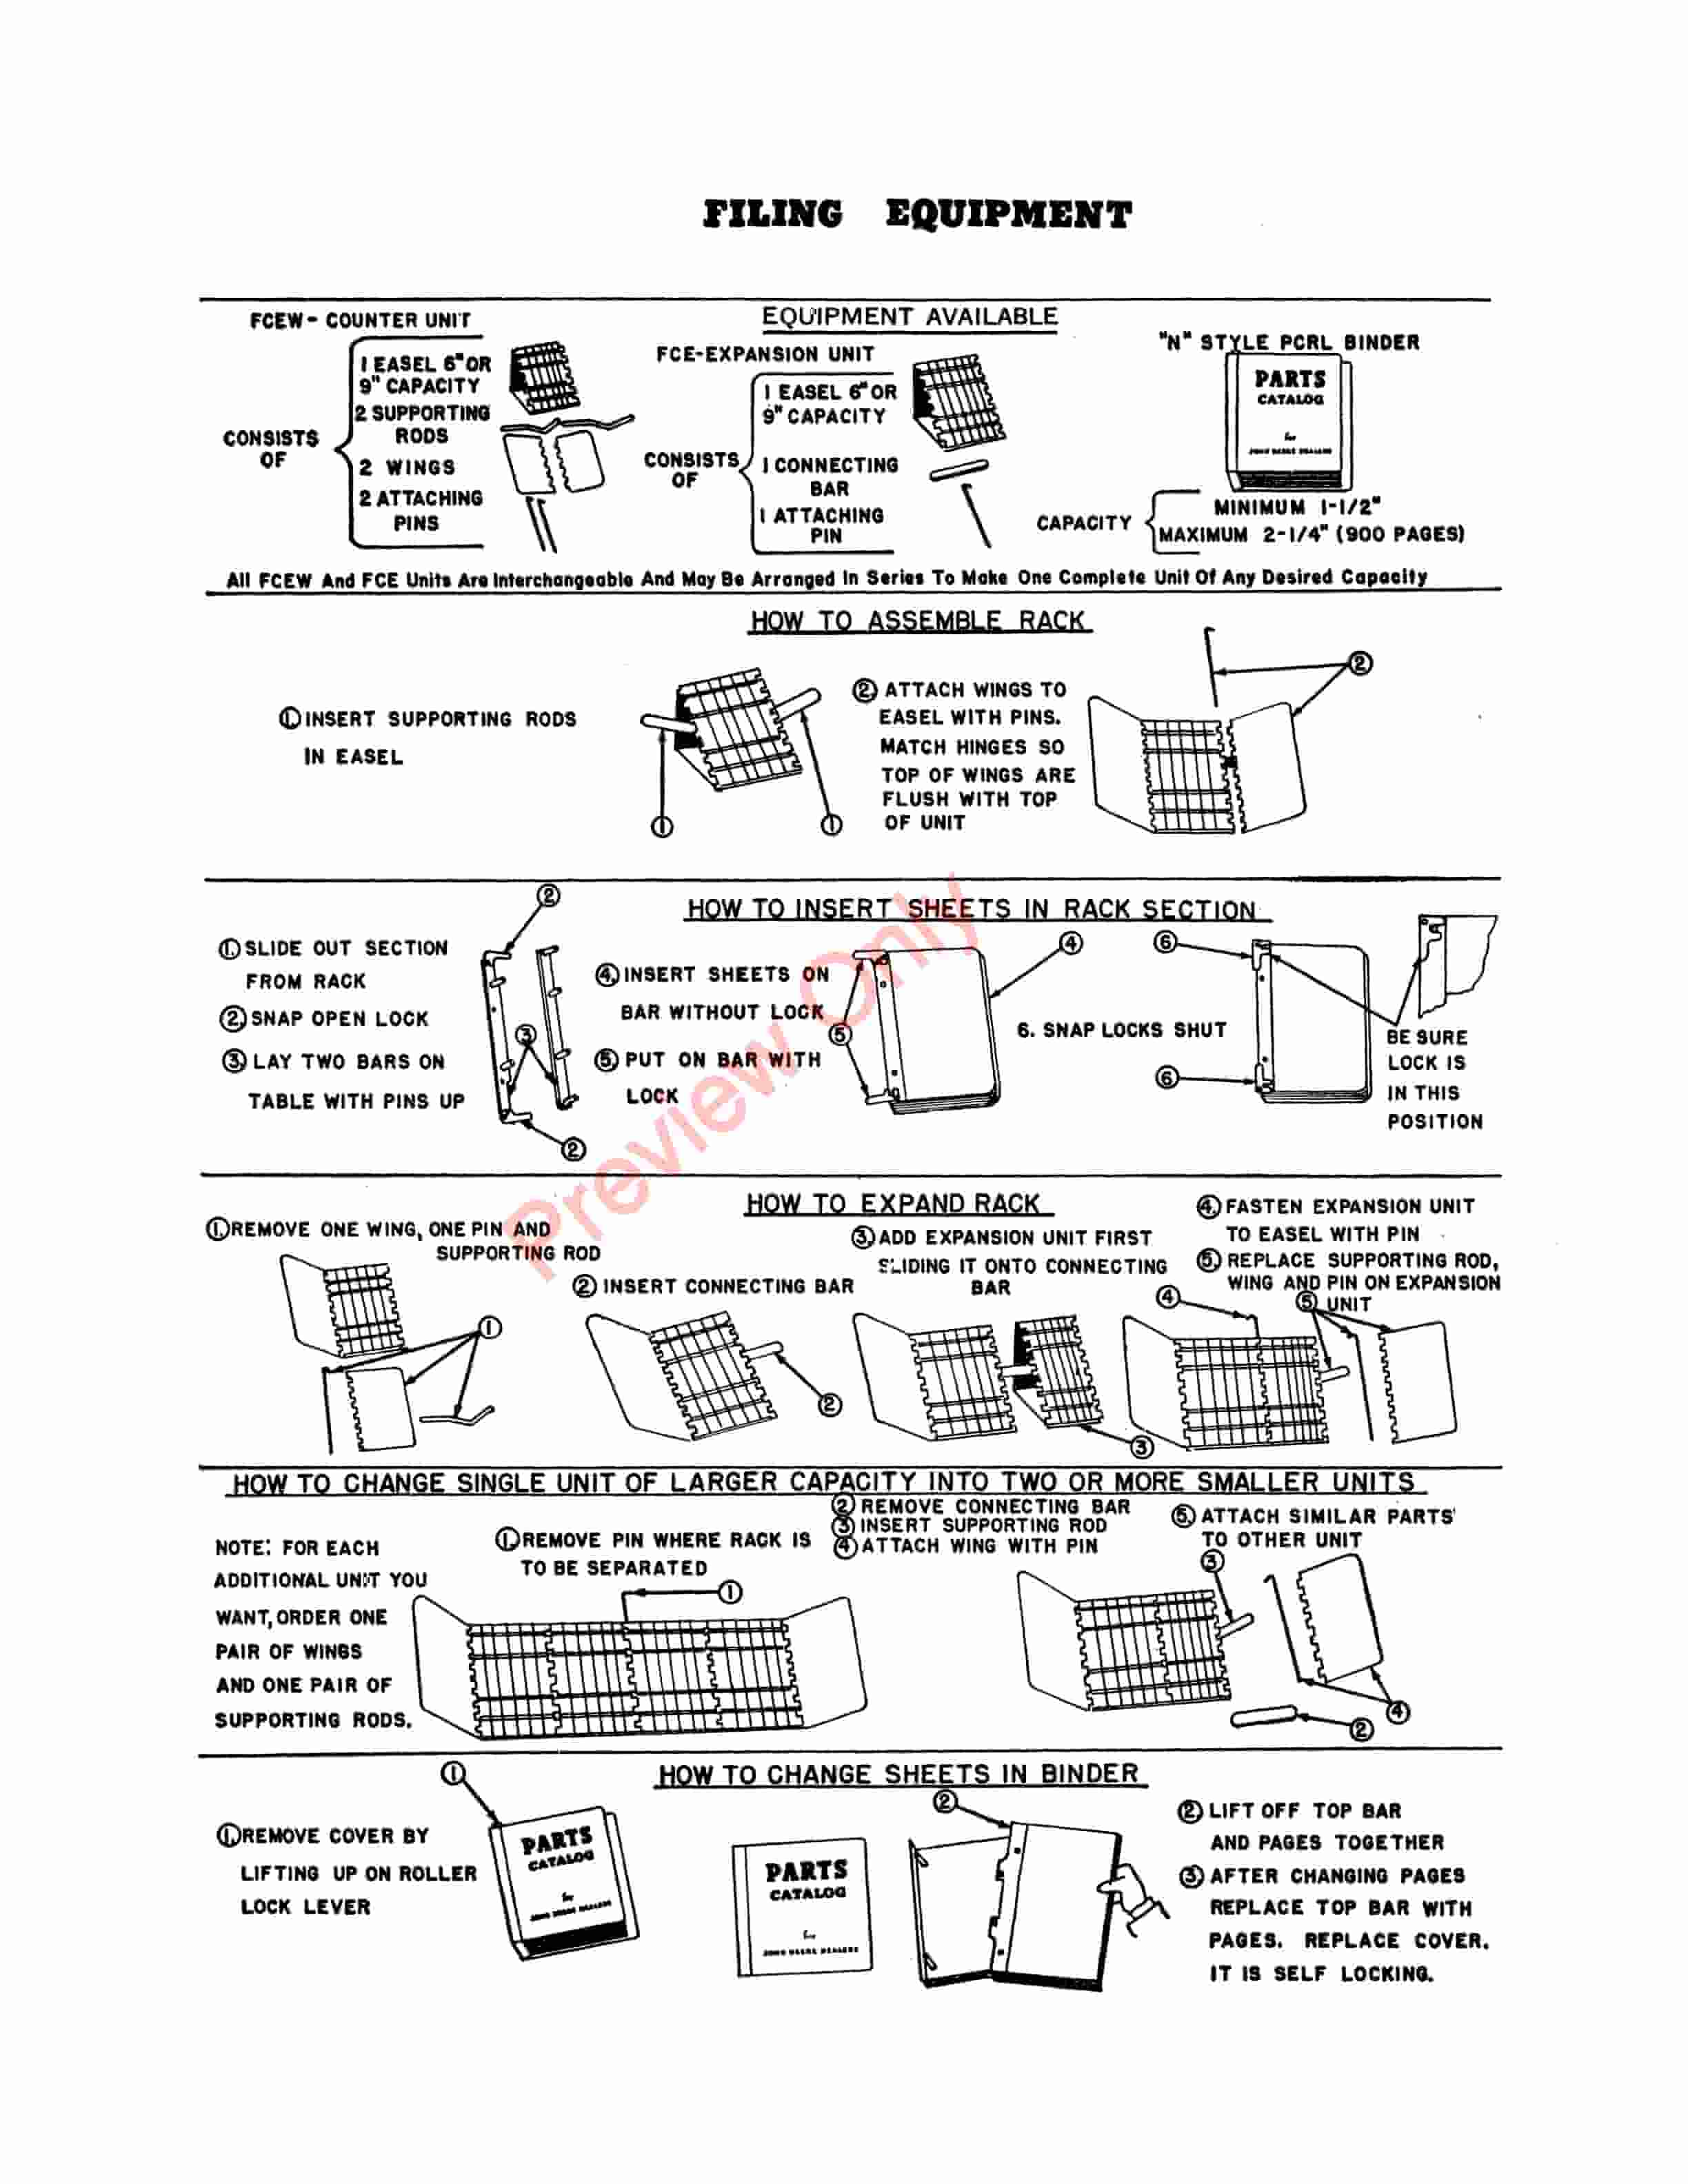 John Deere Integral Lister – No. MT30 Parts Catalog PC243 01APR52-4